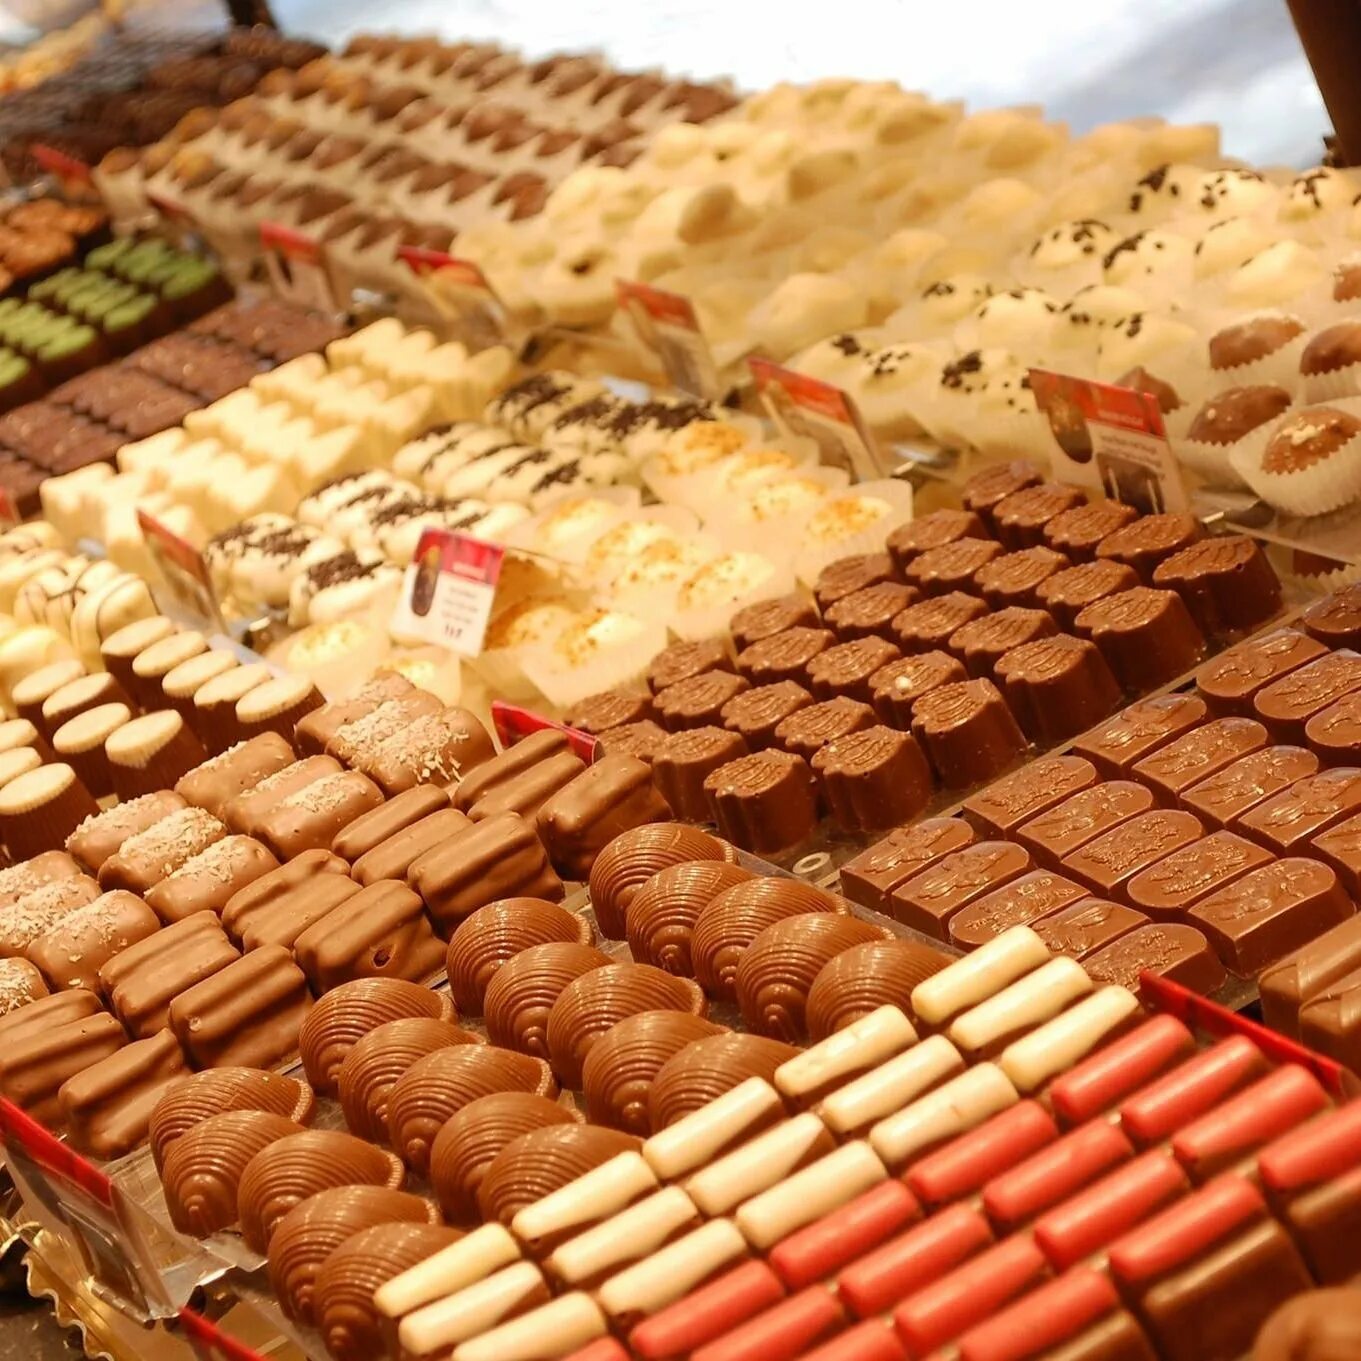 Шоколадный ассортимент. Бельгийский шоколад в Брюсселе. Бельгийский шоколад в Бельгии. Брюссель шоколадная фабрика. Бельгия фабрика шоколада.